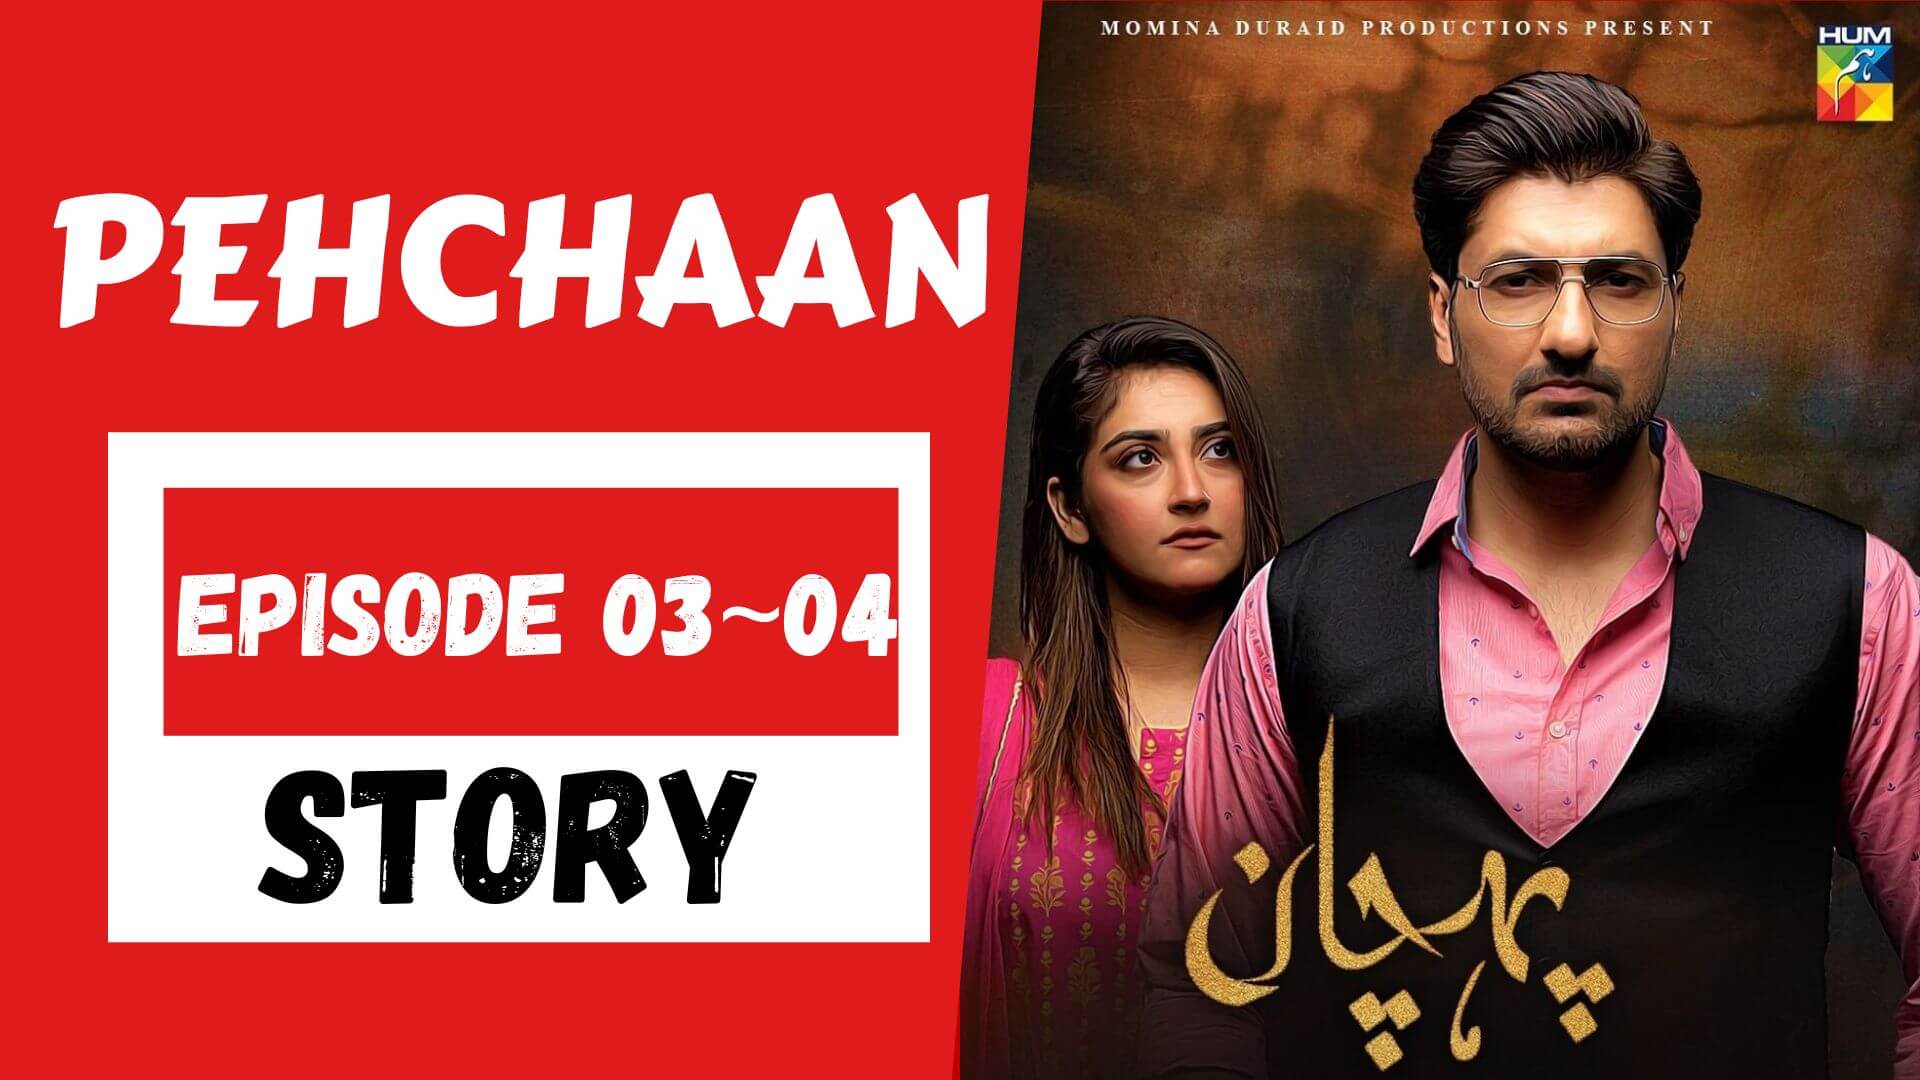 Pehchaan Episode 03_04 Story